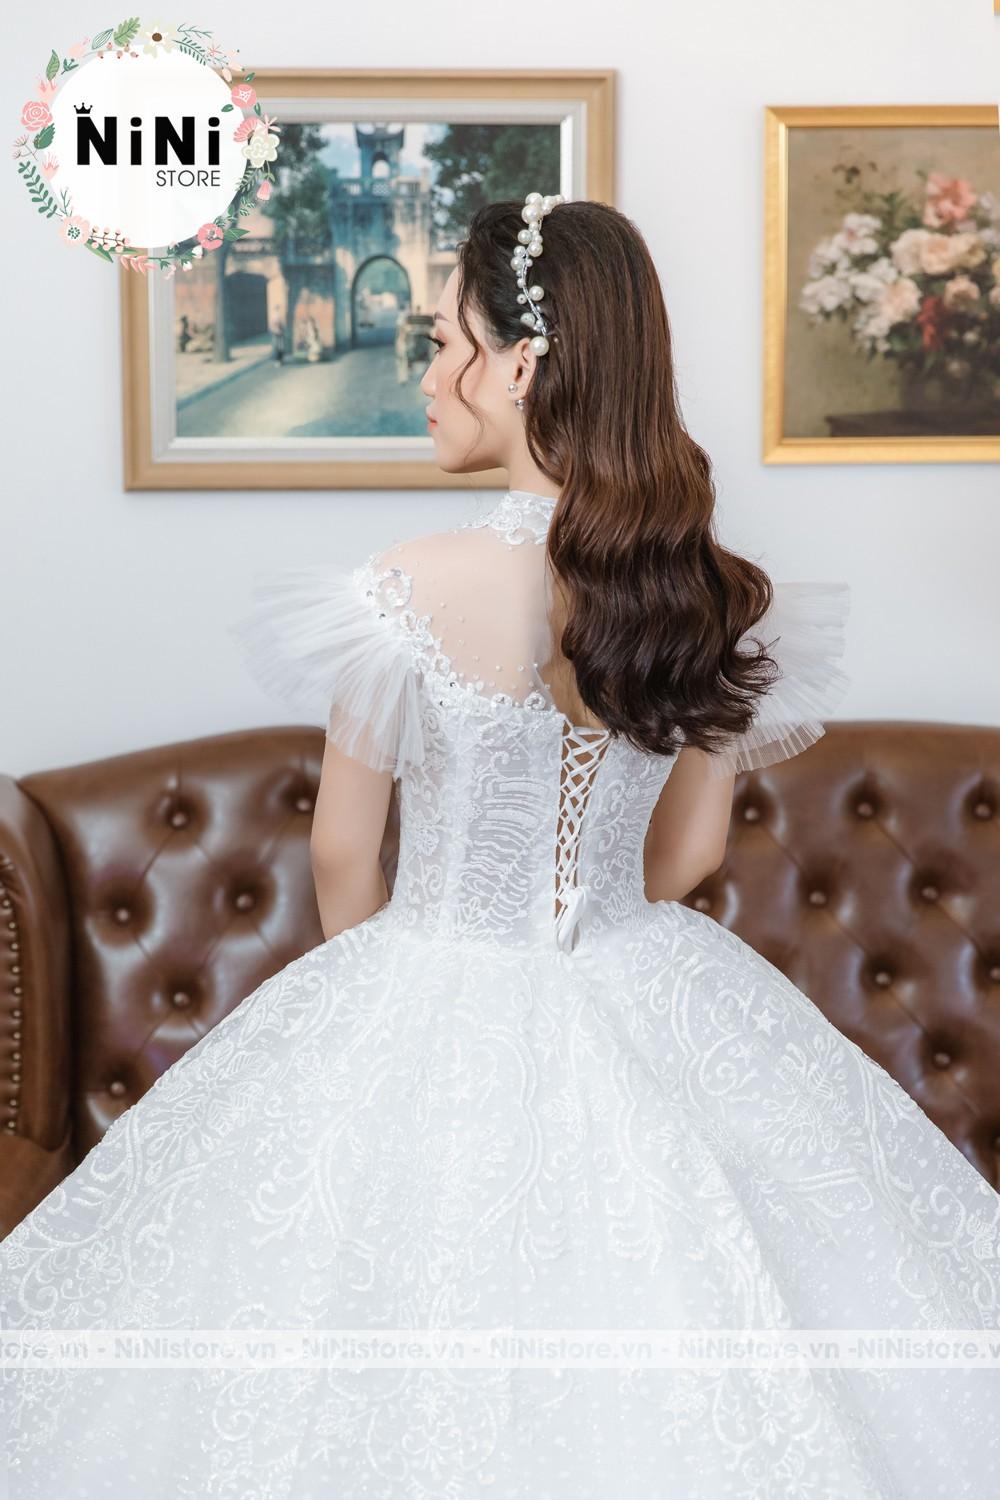 Tìm kiếm một chiếc váy cưới cho cô dâu nhỏ cũng không phải là dễ dàng. Tuy nhiên, chúng tôi có một sự lựa chọn tuyệt vời cho bạn. Chiếc váy cưới cho cô dâu nhỏ của chúng tôi được thiết kế đẹp mắt và dễ mặc. Đảm bảo sẽ khiến cô dâu nhỏ của bạn trông thật đẹp và dễ thương trong ngày cưới của mình.